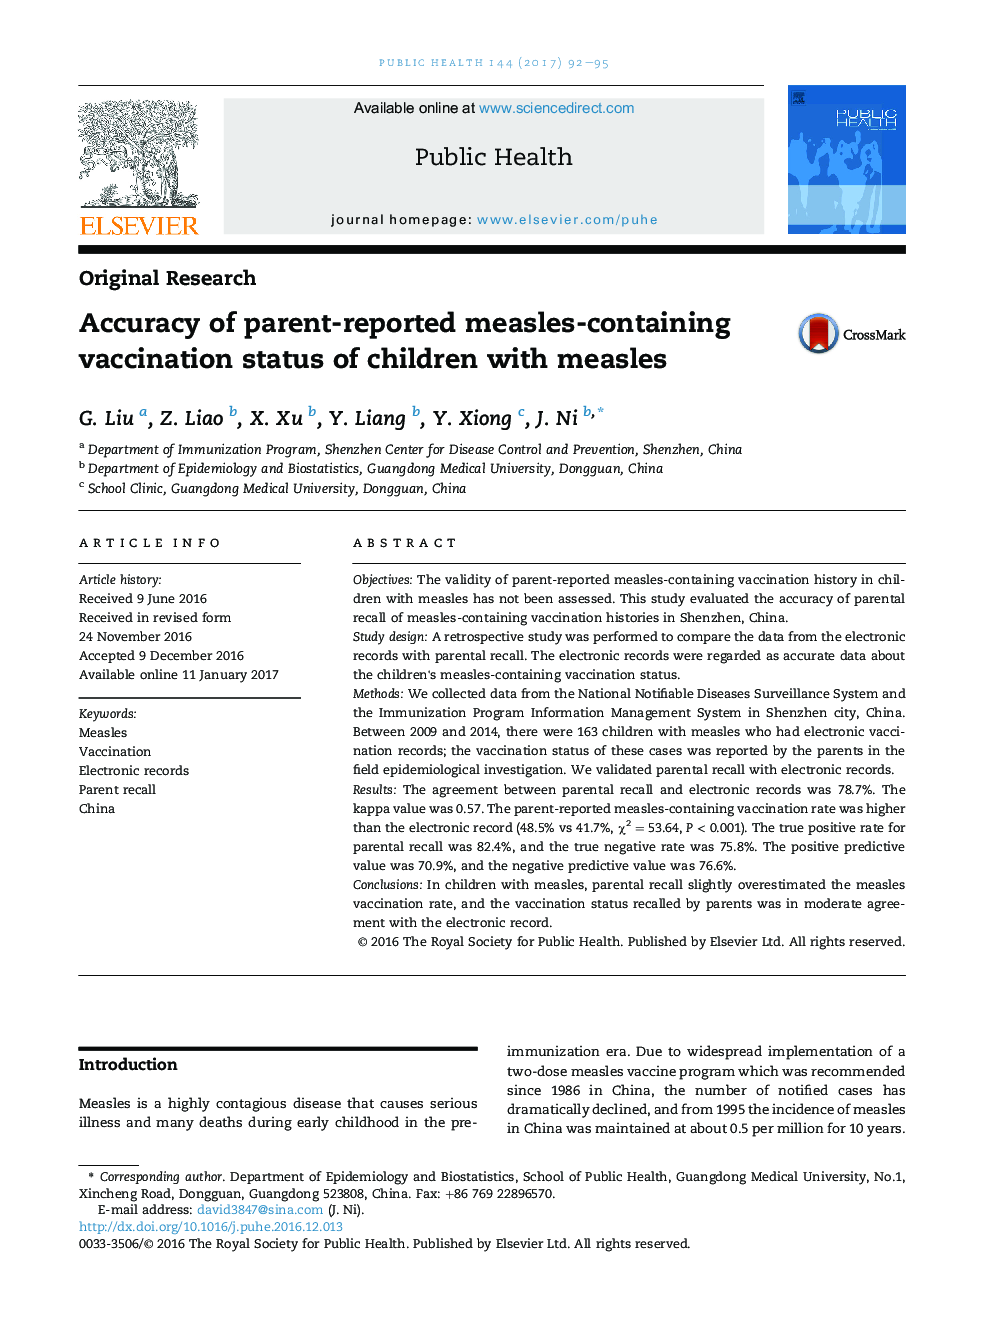 دقت وضعیت واکسیناسیون والدین در مورد سرخک در کودکان مبتلا به سرخک 